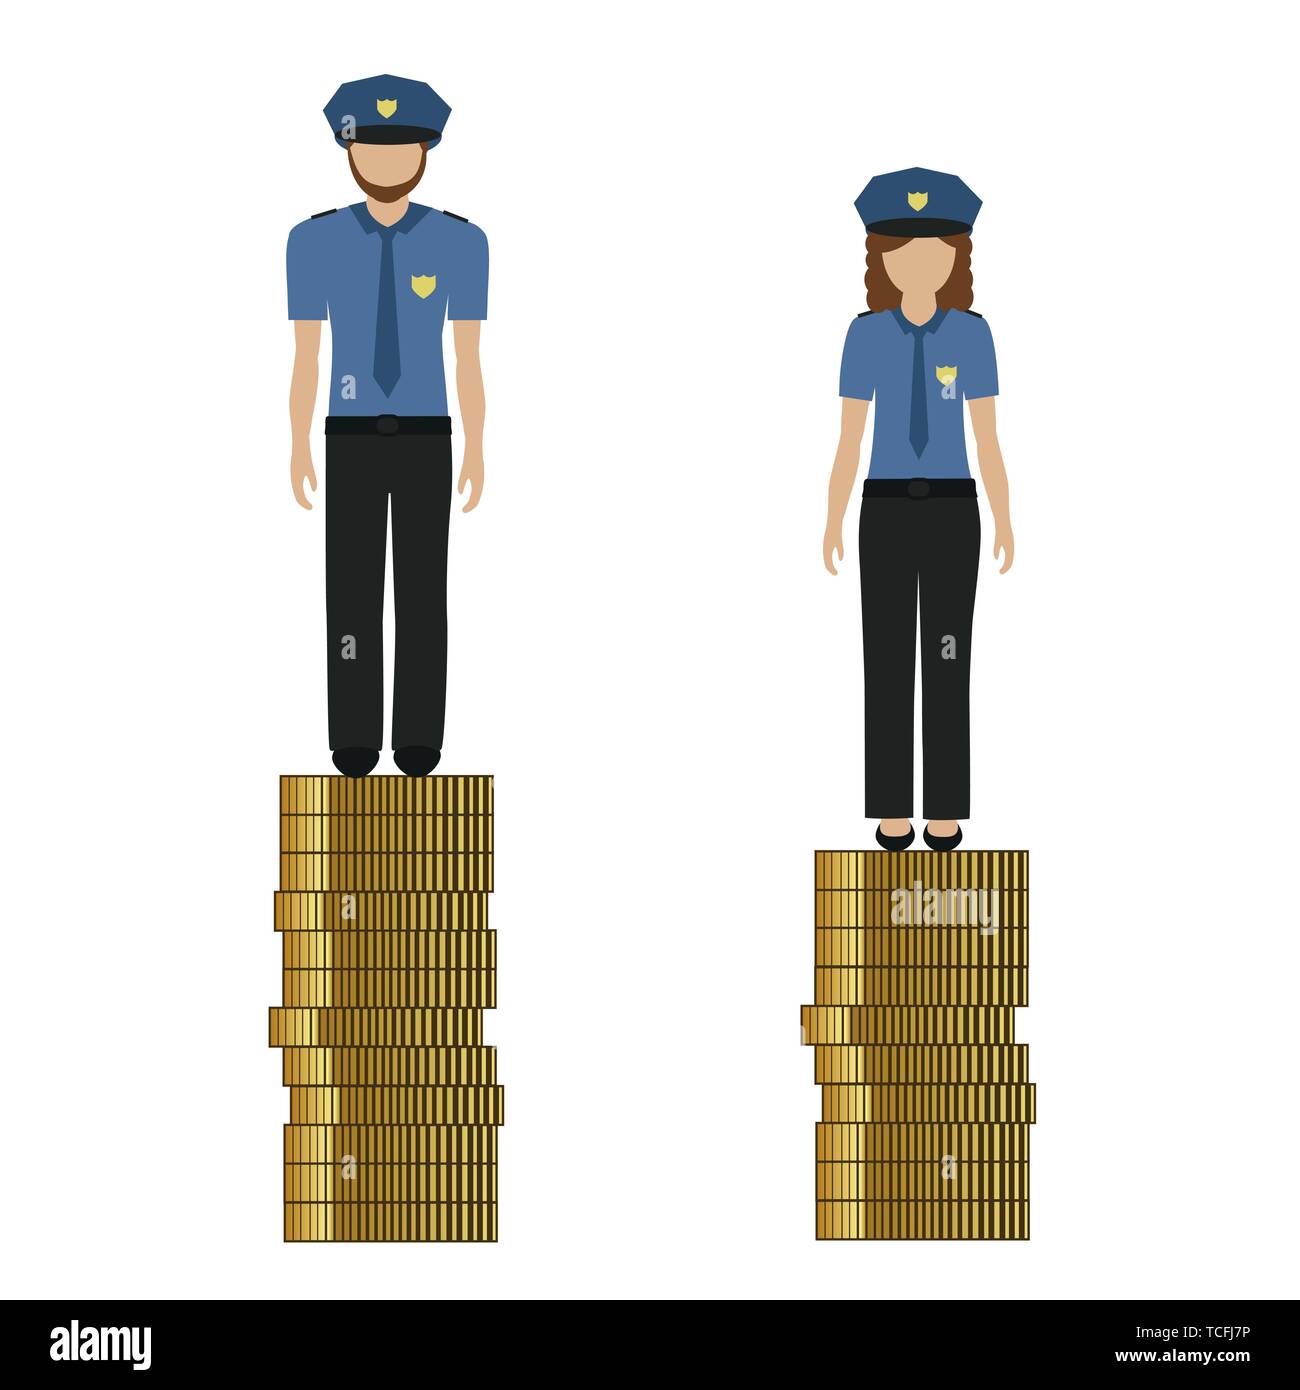 Frau verdient weniger Geld als Mann Polizei diskriminiert, benachteiligt Vektor-illustration EPS 10. Stock Vektor